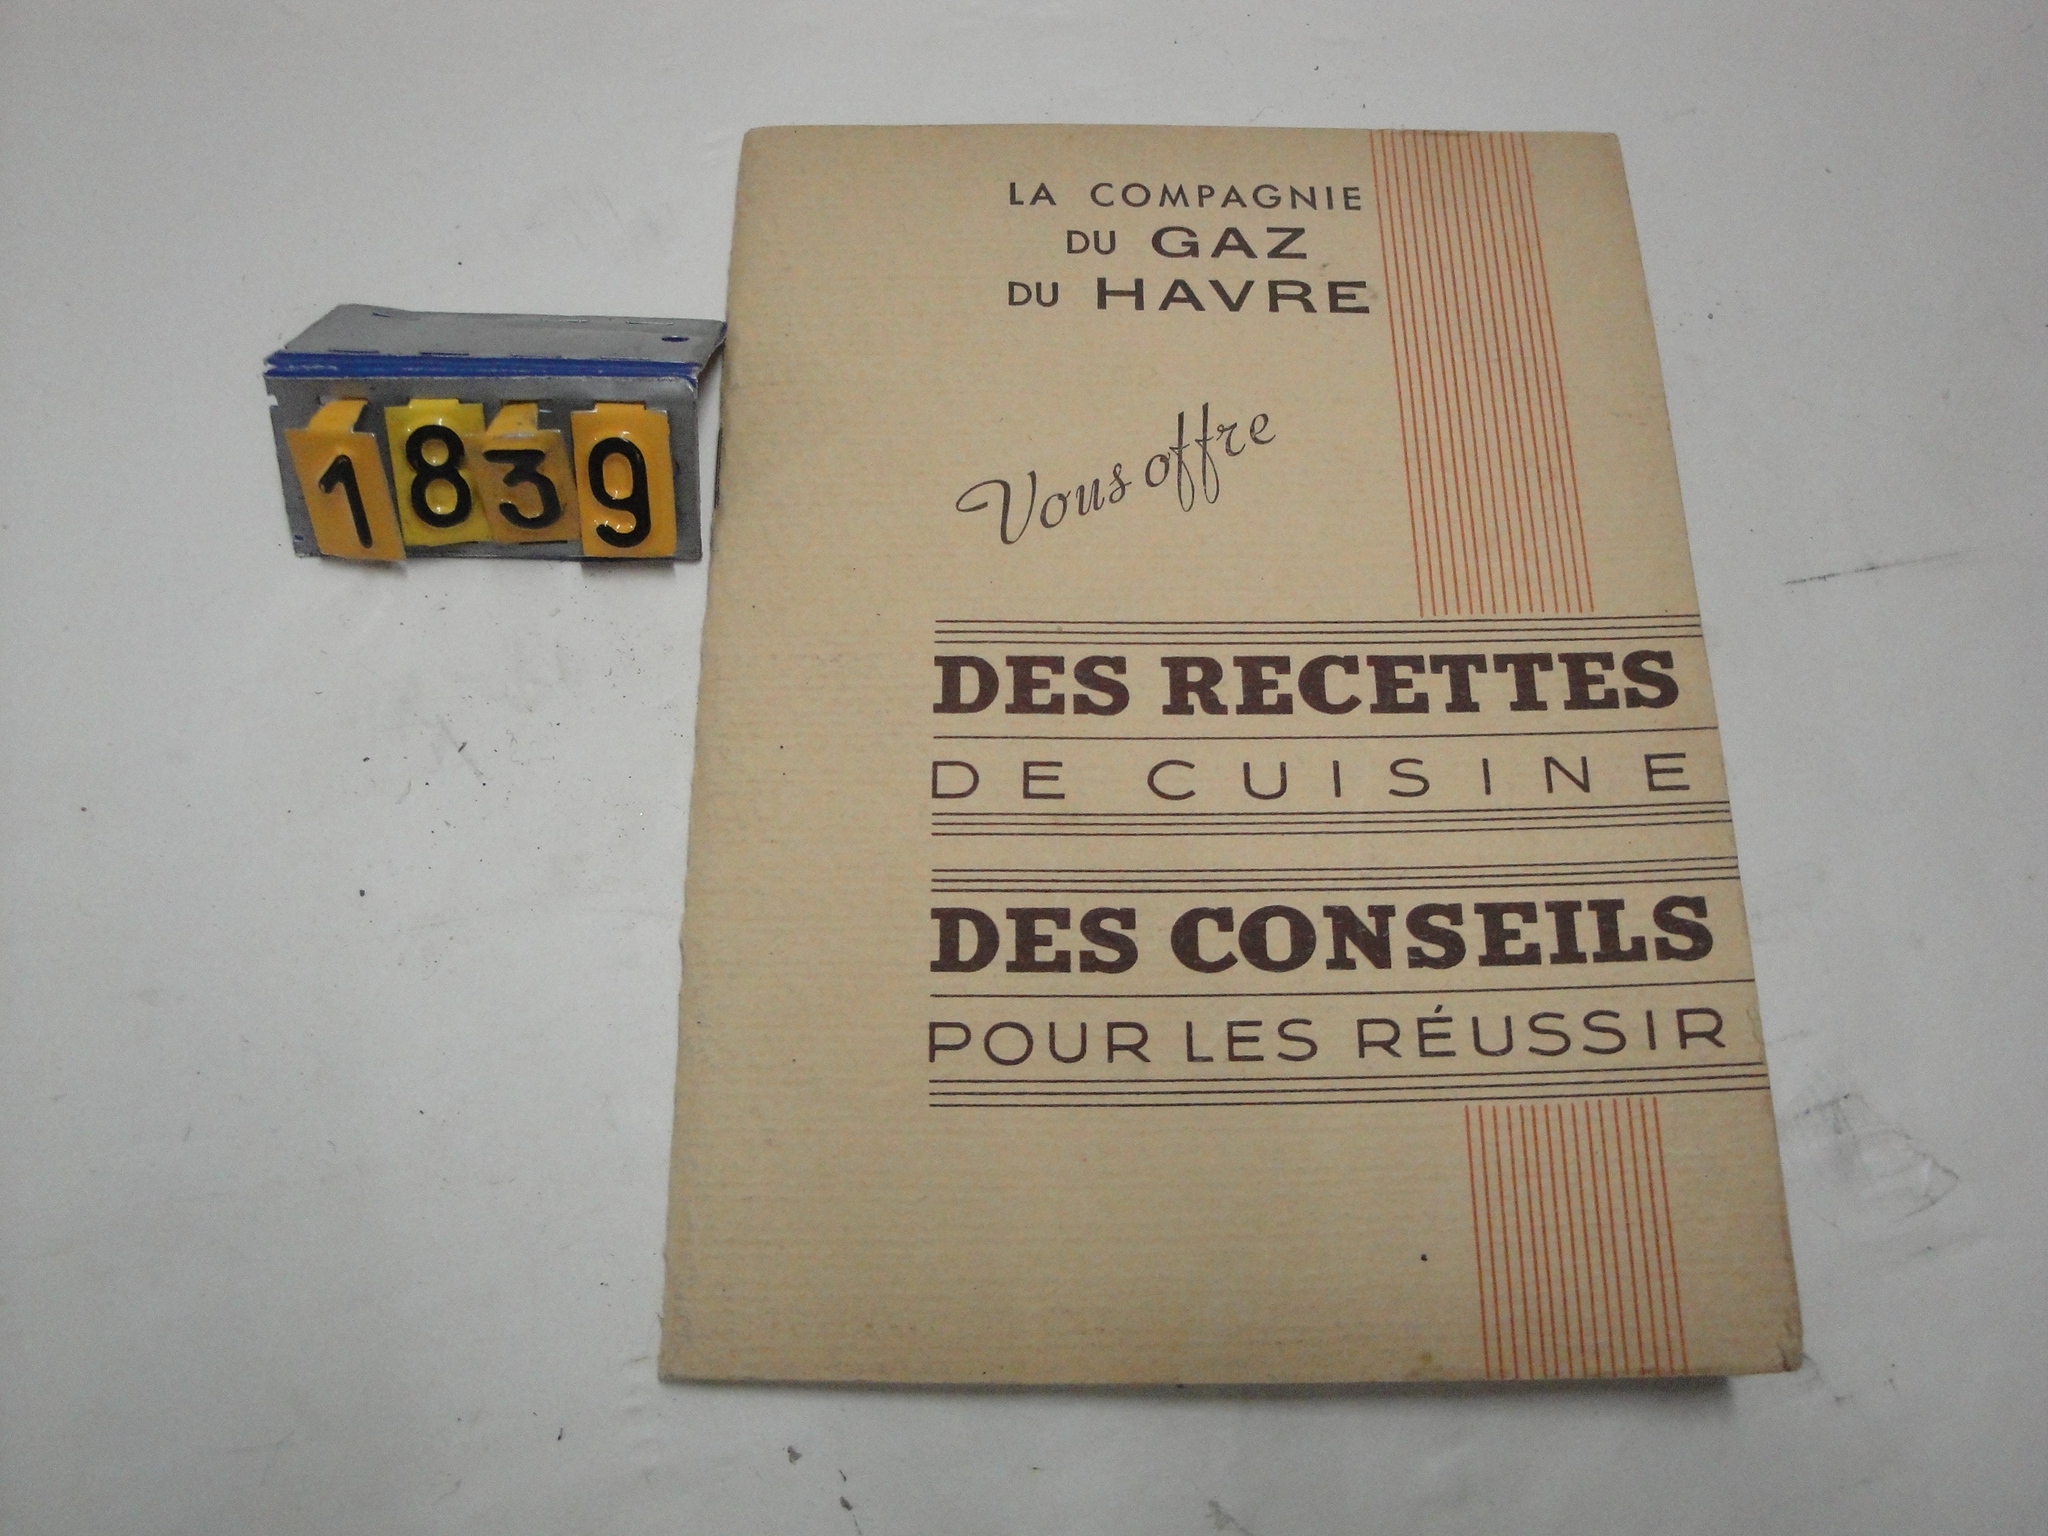  Collection ASPEG, pièce numéro 1839 : Recettes de cuisine